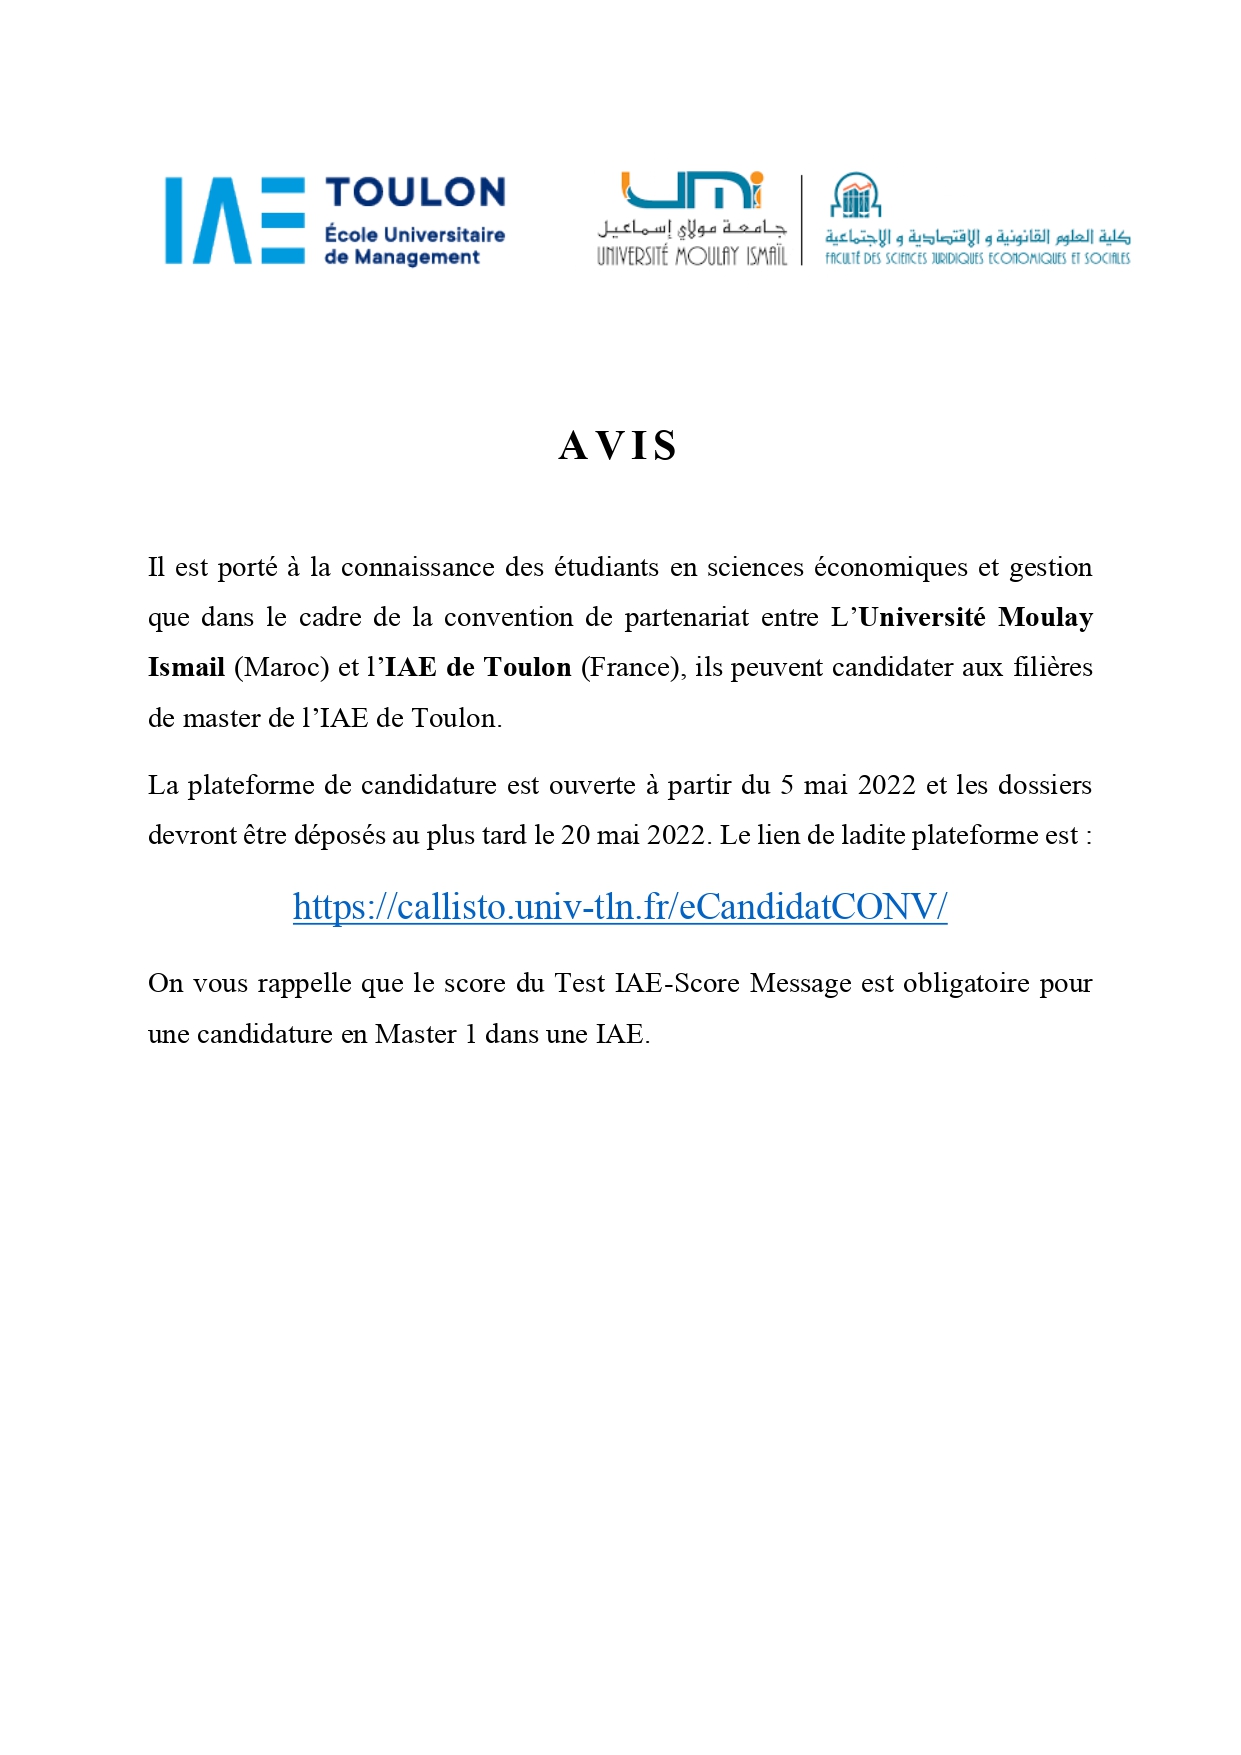 Avis : partenariat entre UMI et l’IAE de Toulon (France)